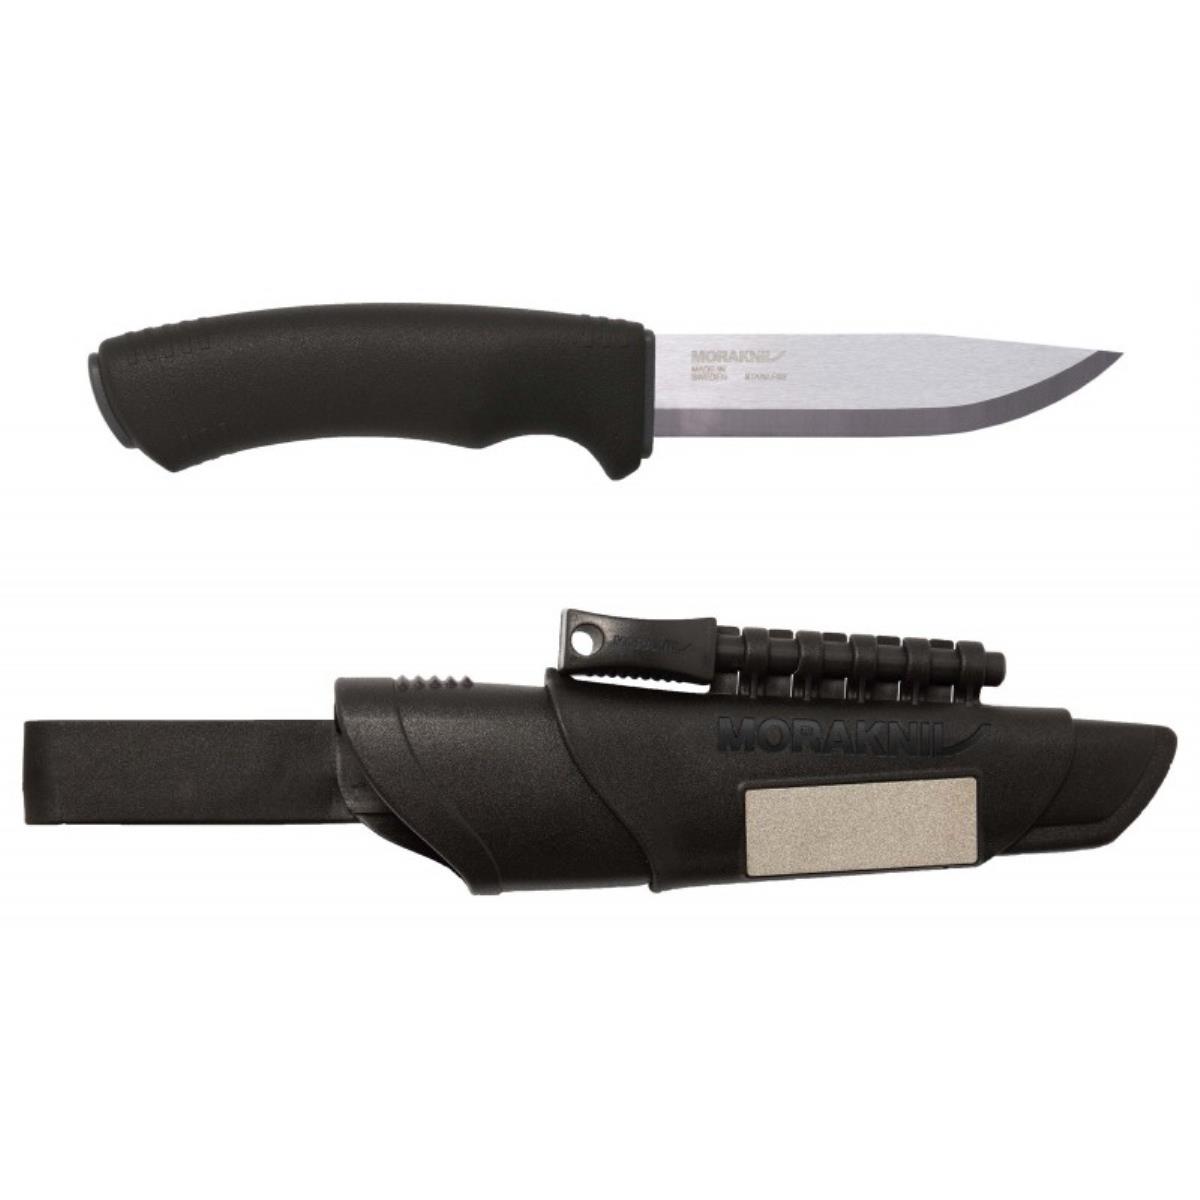 Нож Bushcraft Survival Black Ultimate Knife (11835) Morakniv нож kniv craftline q allround 0711 11481 morakniv